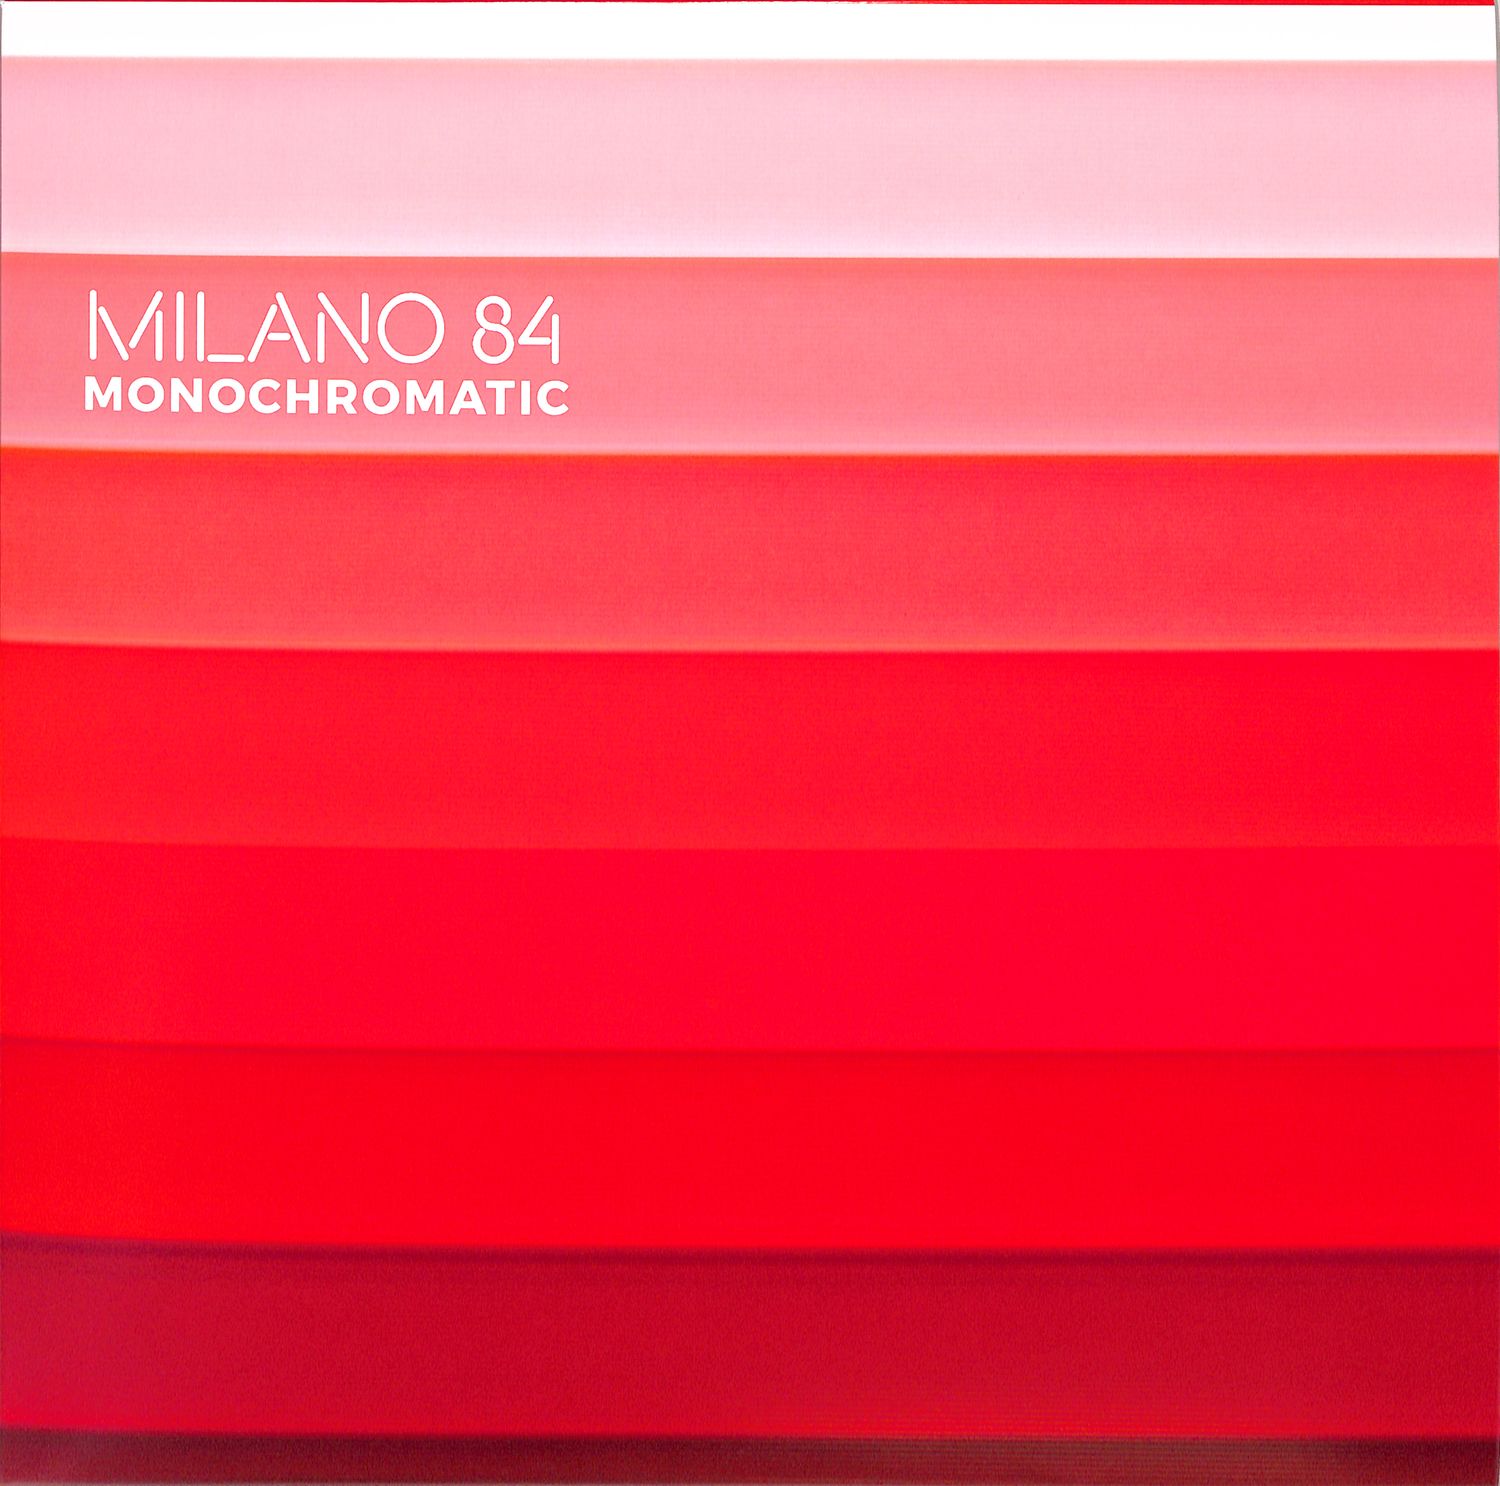 Milano 84 - MONOCHROMATIC EP